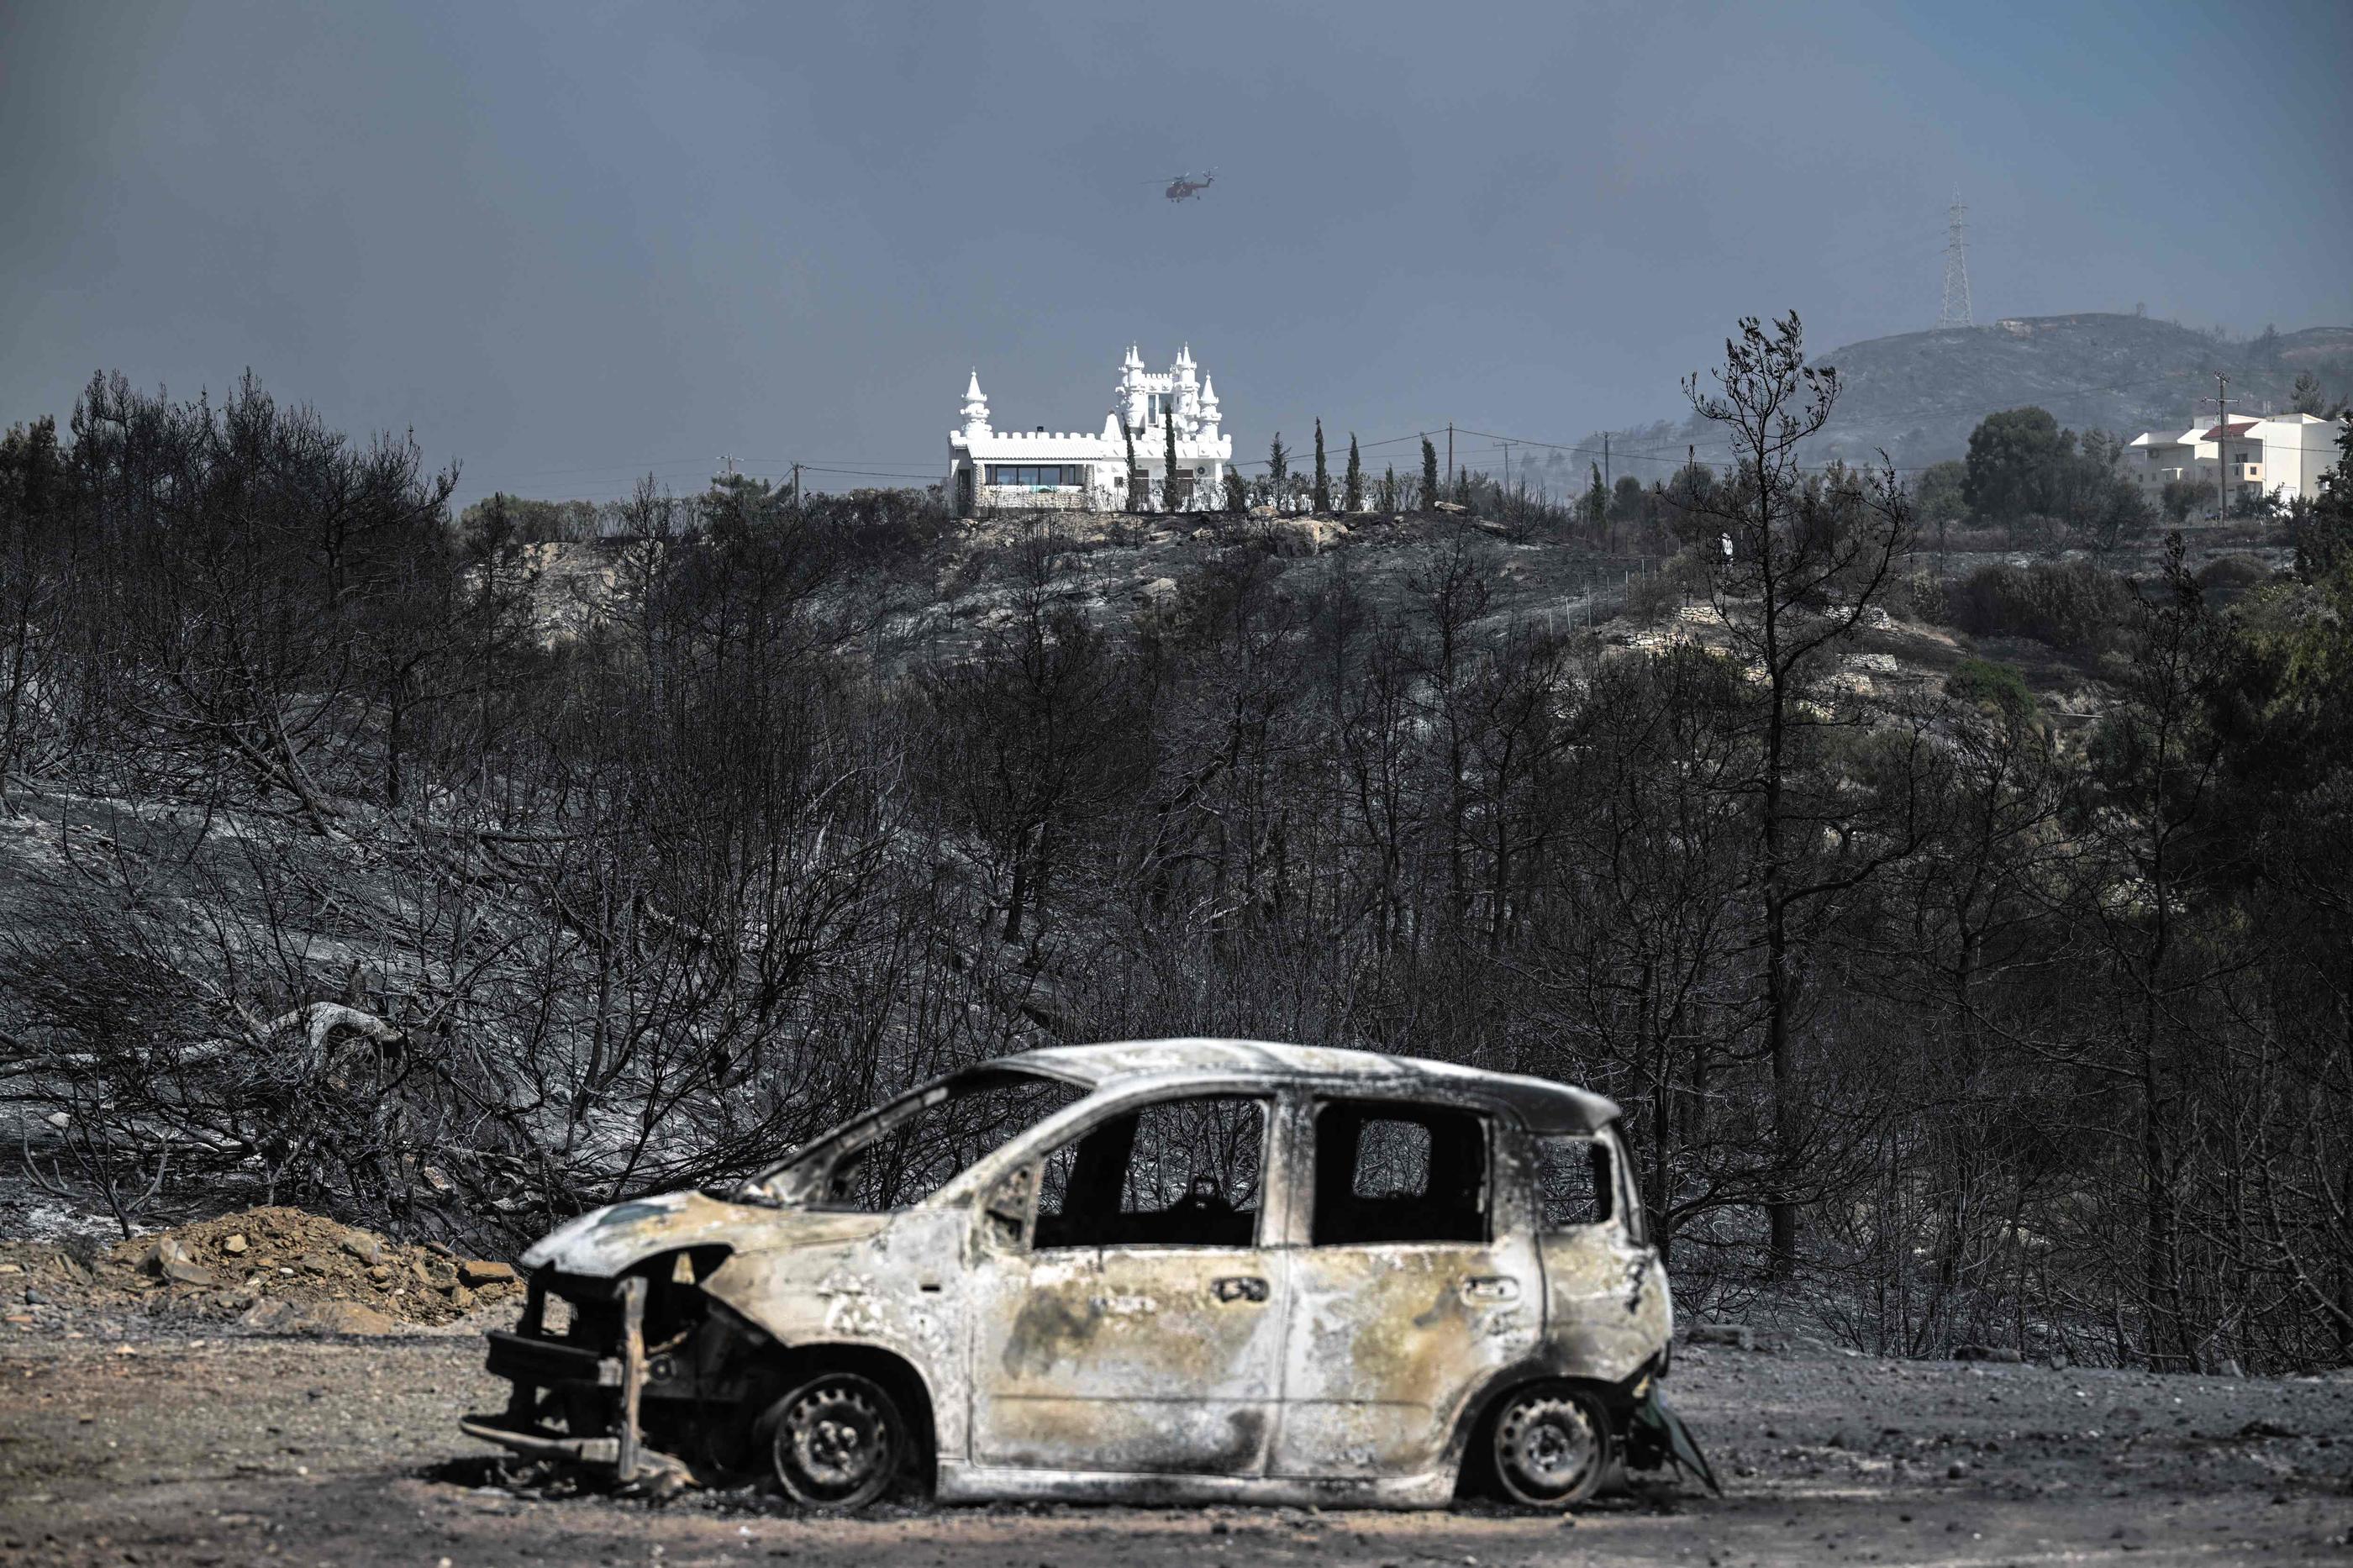 Près de Kiotari (Grèce), le 23 juillet. El Niño s'inscrit dans un contexte de dérèglement climatique avec des phénomènes extrêmes qui se multiplient, comme les incendies massifs. AFP/Spyros Bakalis